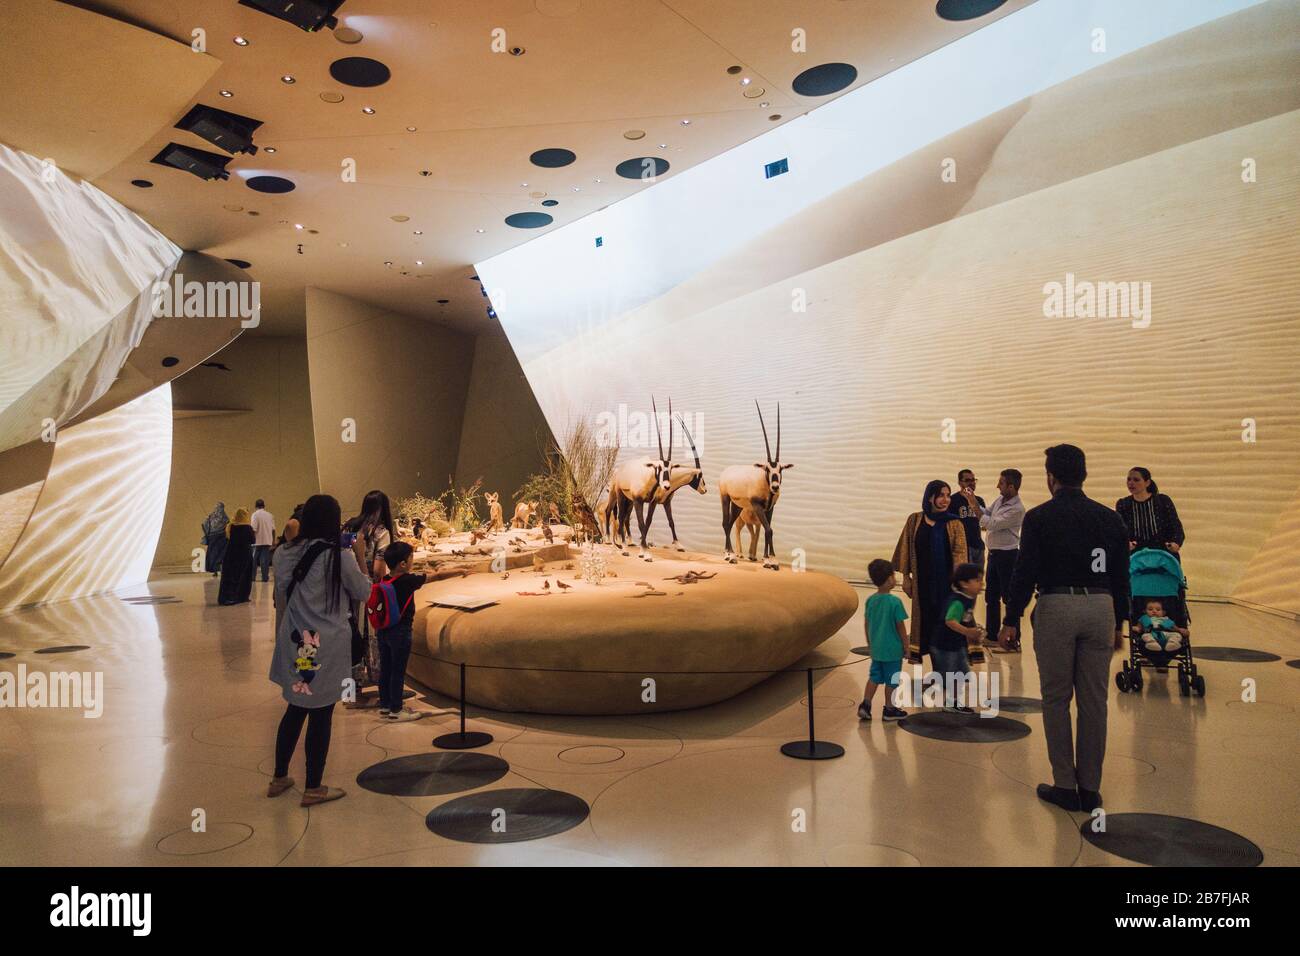 L'oryx arabe, l'animal national du Qatar, est exposé dans une exposition au Musée national du Qatar, à Doha Banque D'Images